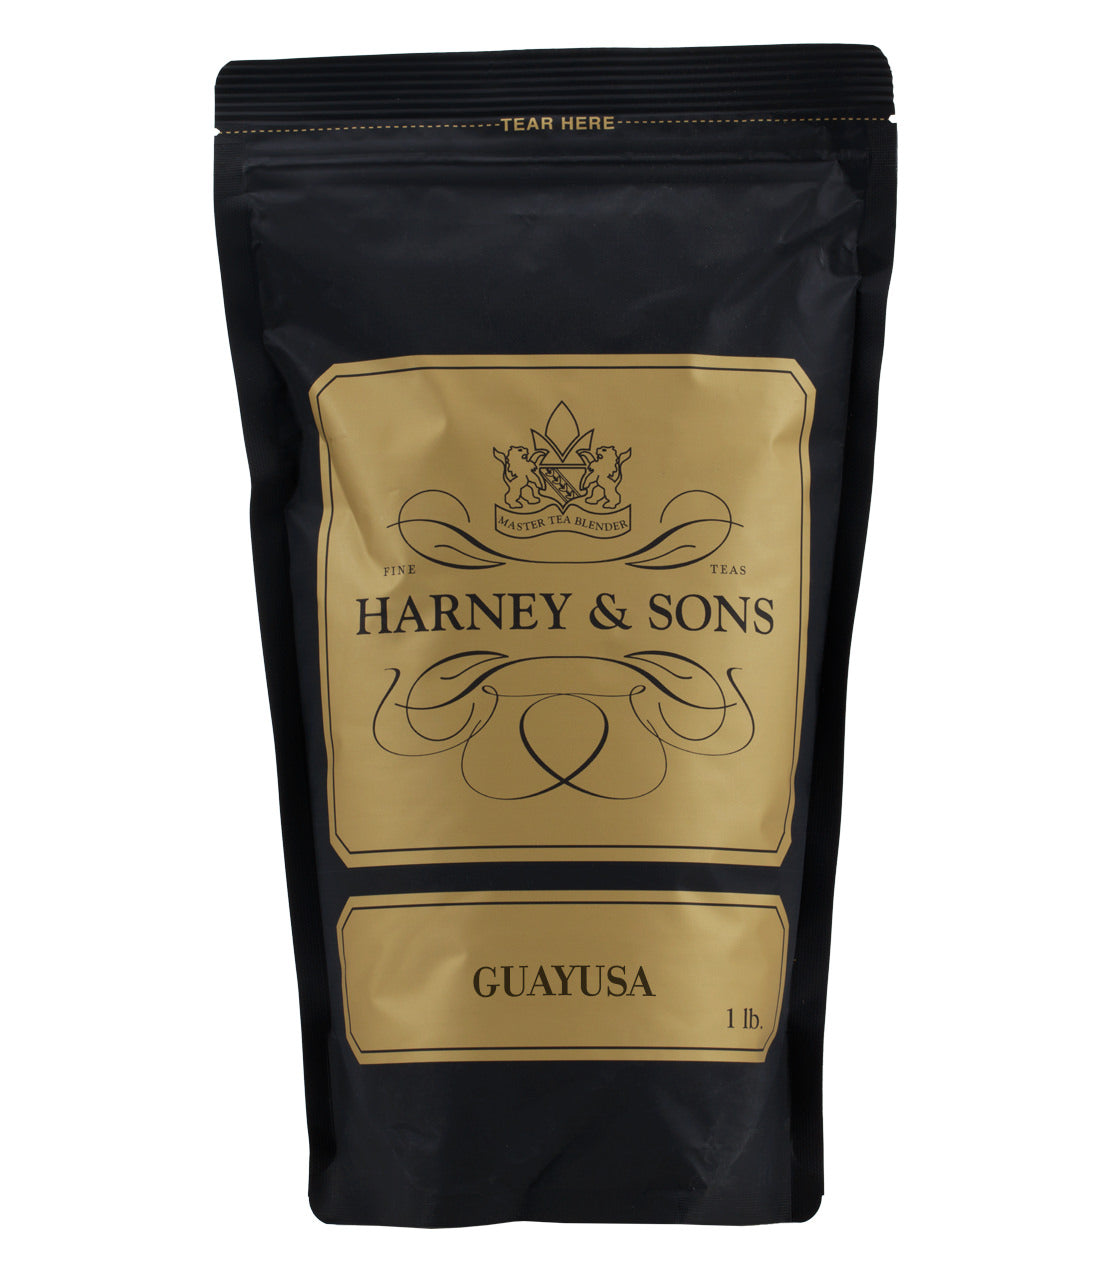 Guayusa - Loose 1 lb. Bag - Harney & Sons Fine Teas